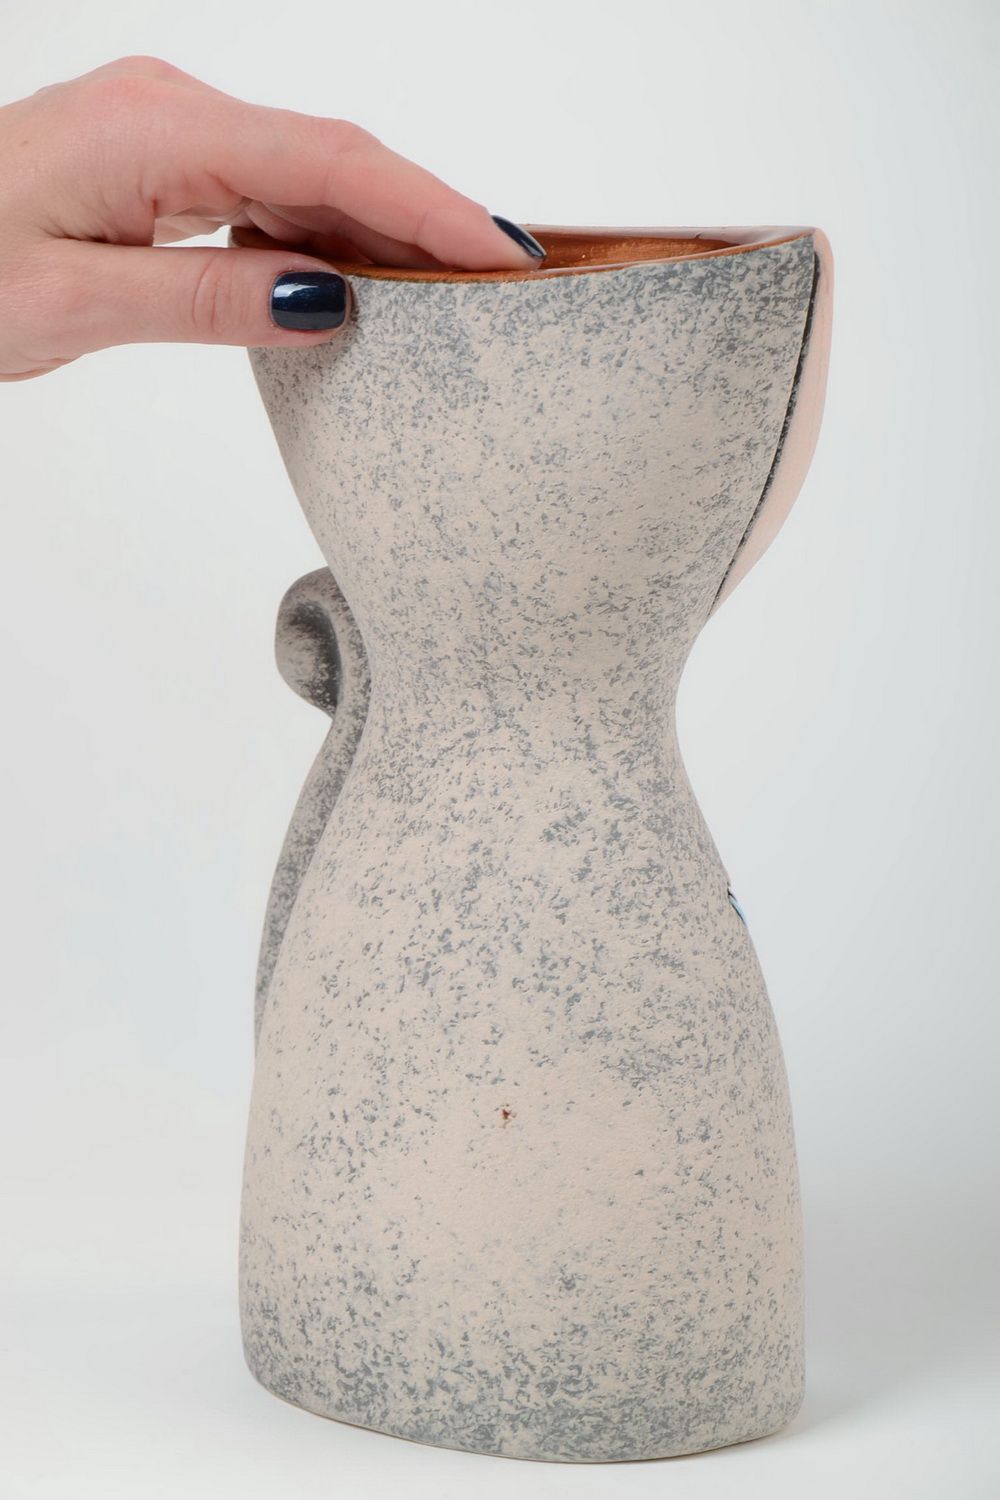 Jarrón de cerámica pintado con pigmentos artesanal de semiporcelana 2 litros foto 5